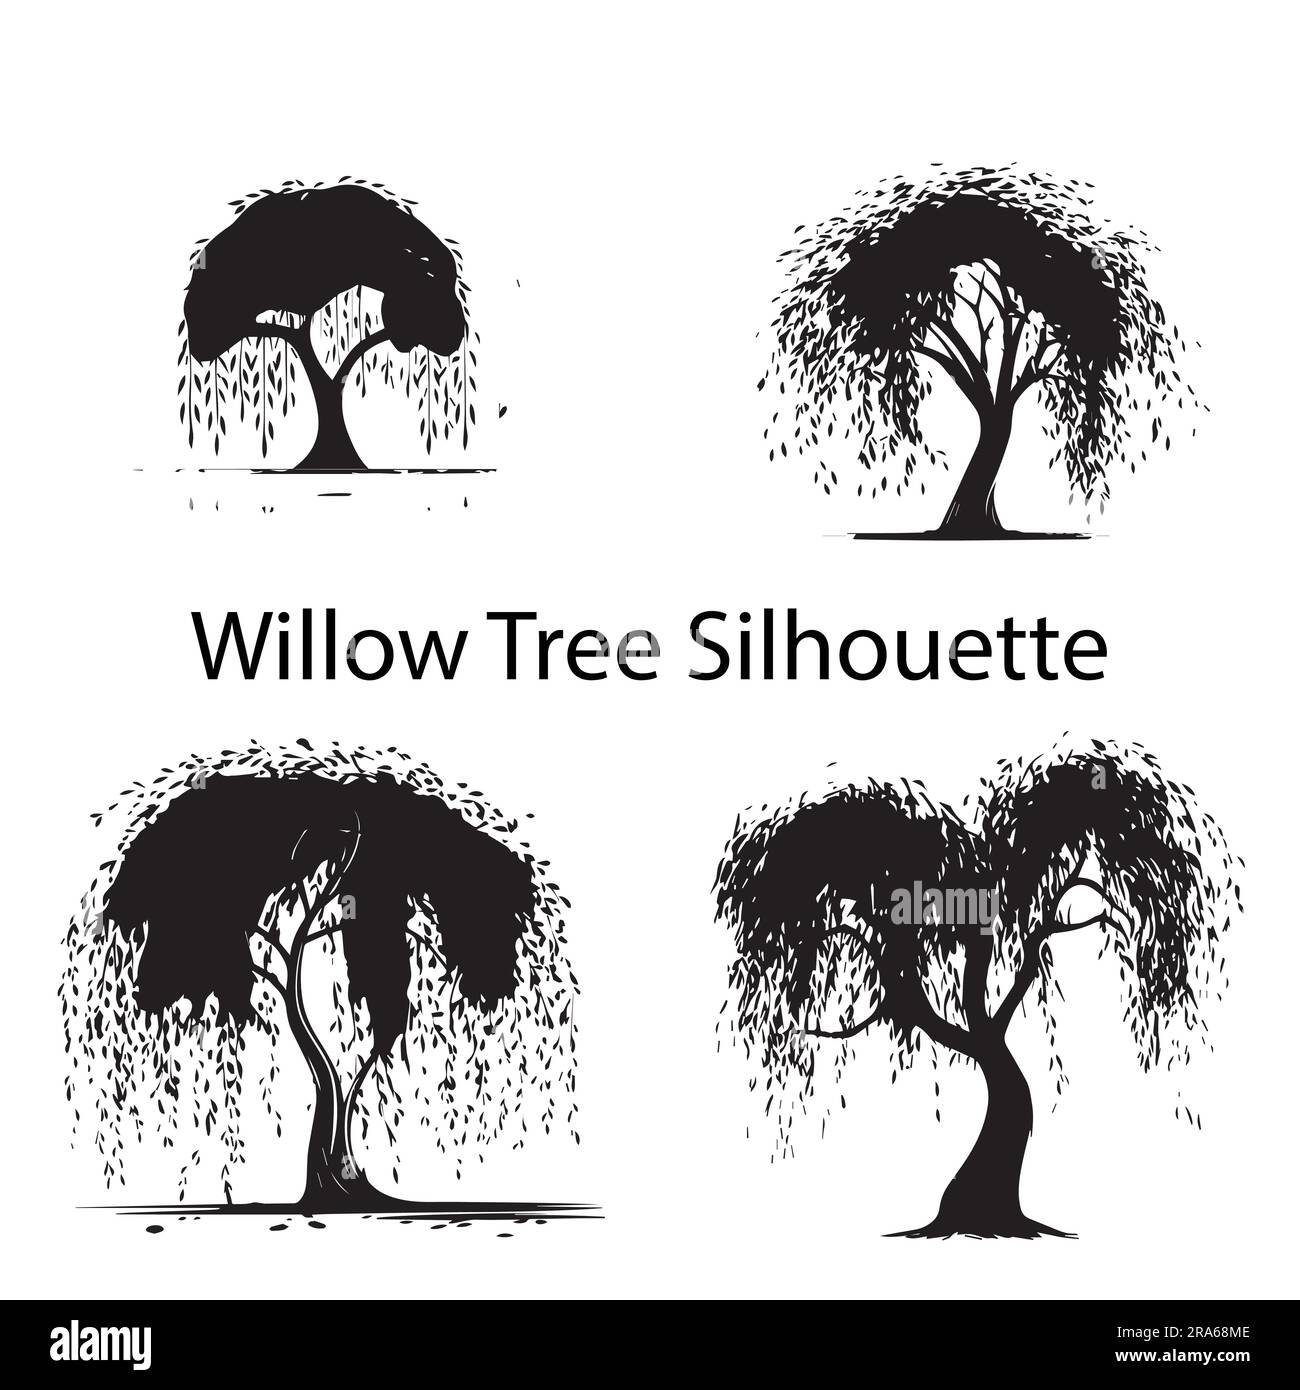 Ein Satz Silhouetten-Vektorbilder für Weidenbäume Stock Vektor